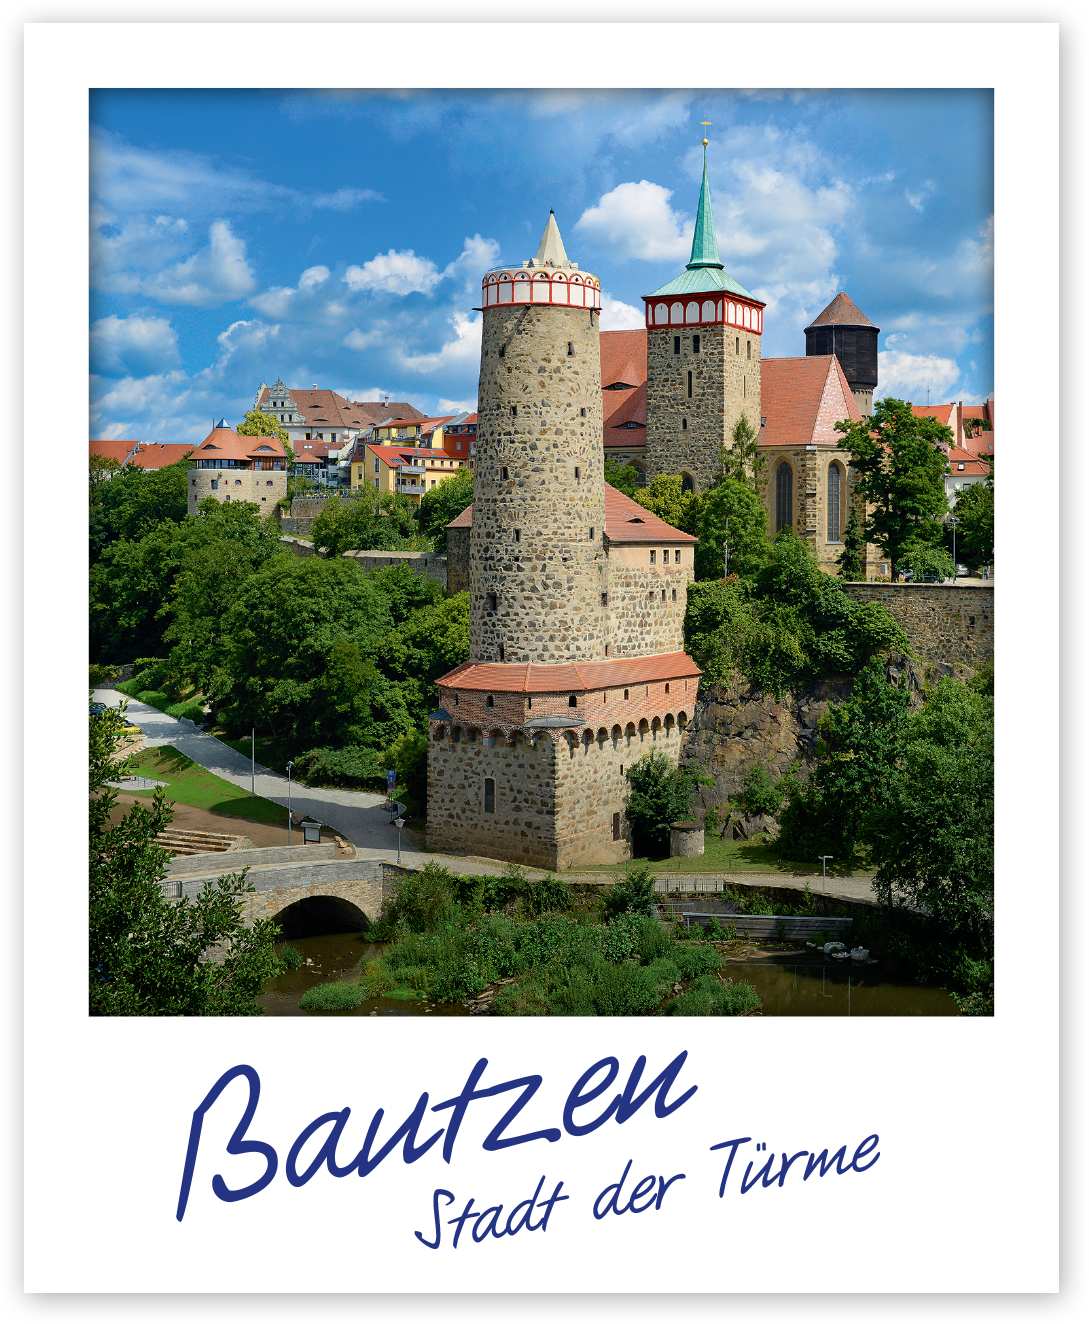 Magnet Bautzen – Stadt der Türme